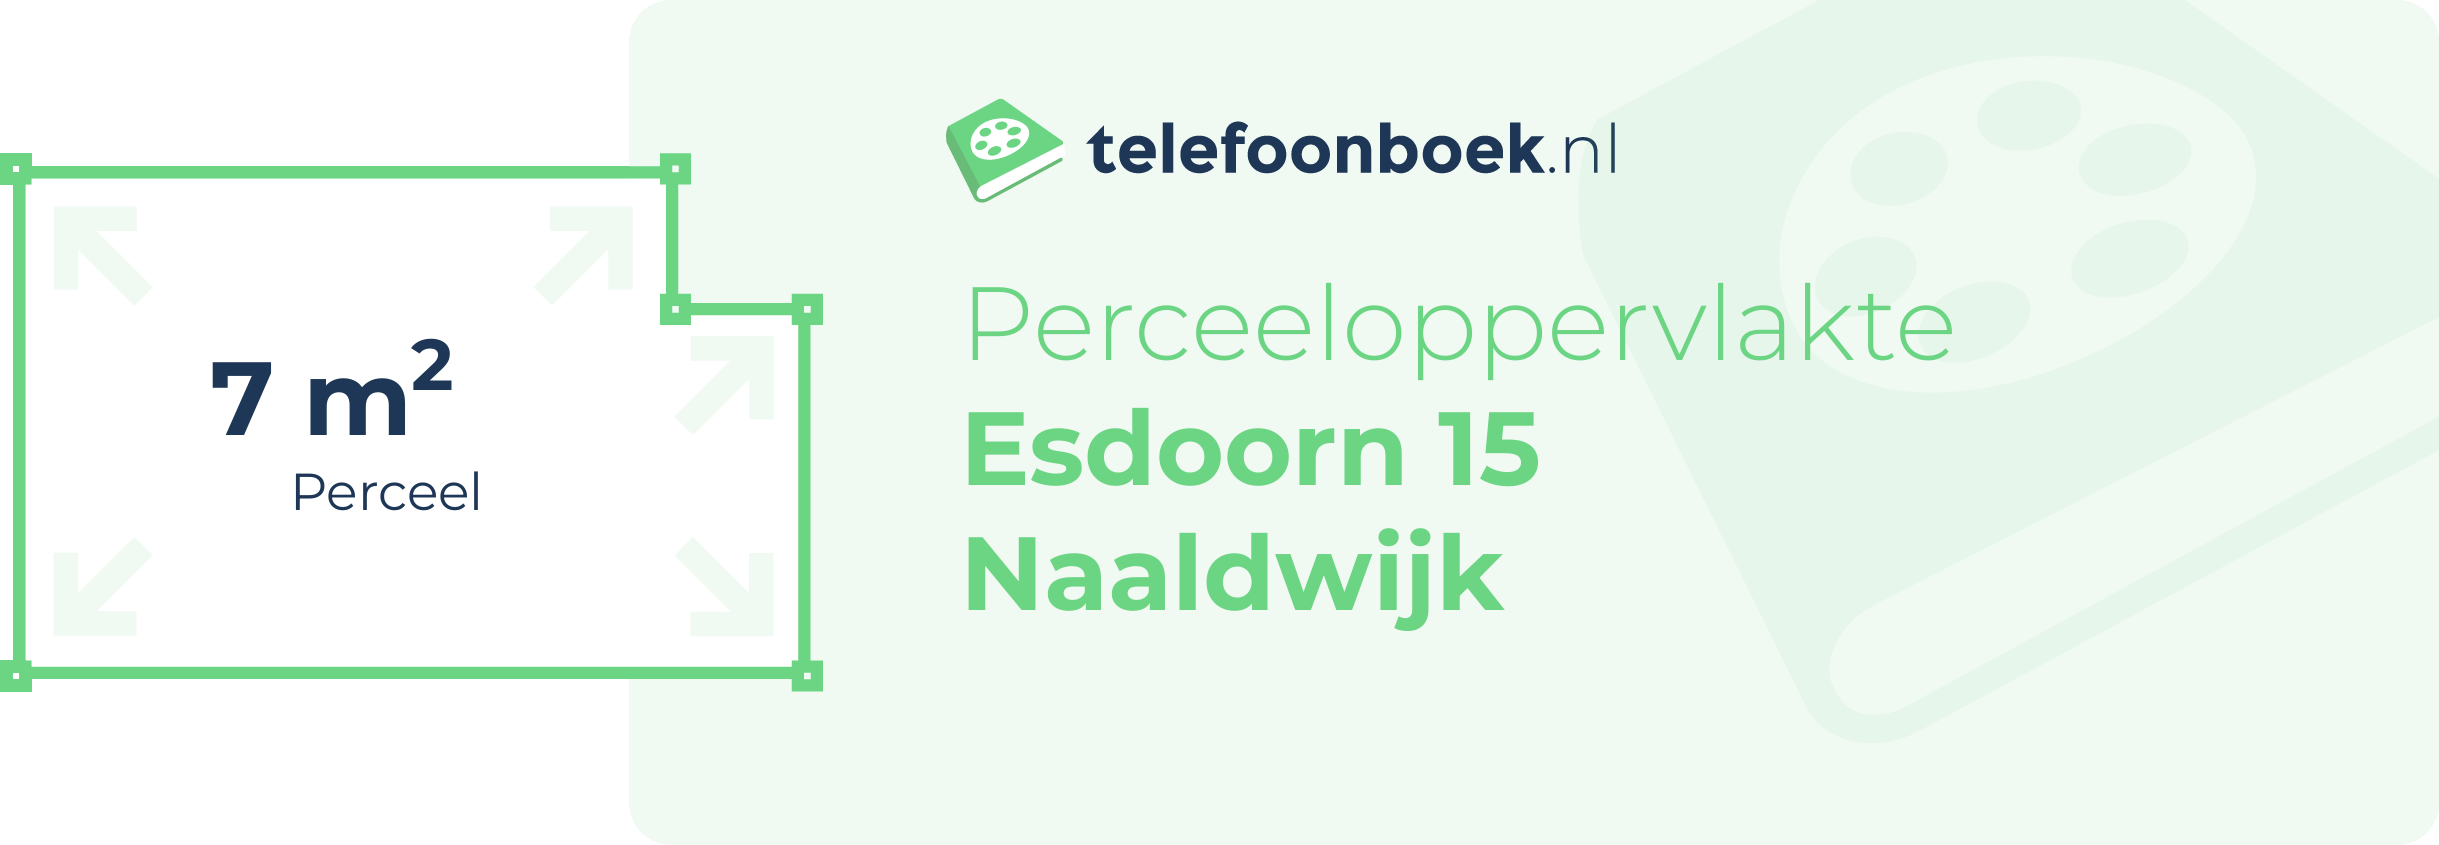 Perceeloppervlakte Esdoorn 15 Naaldwijk